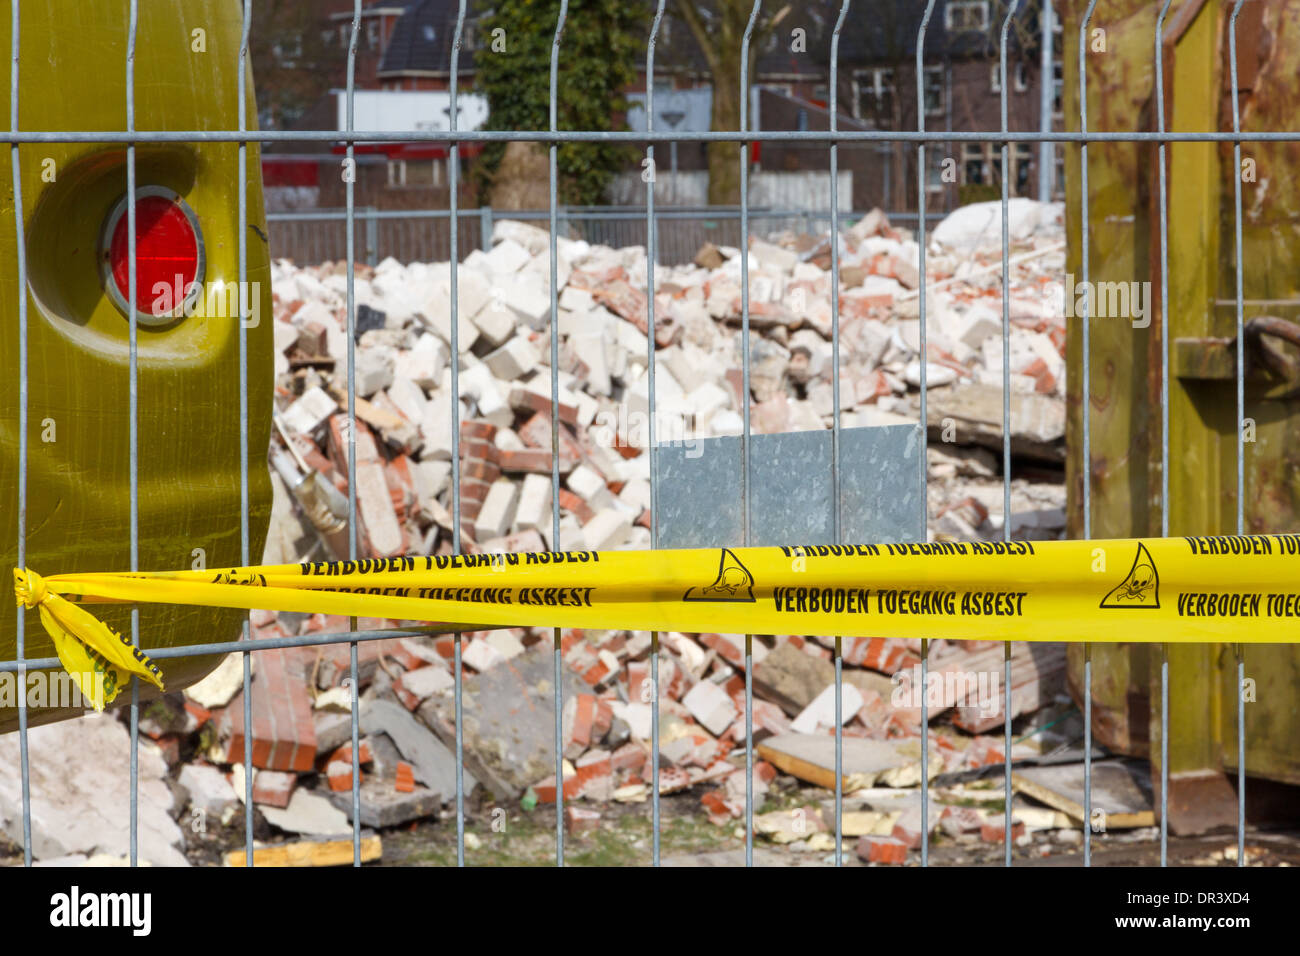 Kein Trespassing Band für Asbest in niederländischer Sprache am Eingang des kontaminierten Gelände Stockfoto